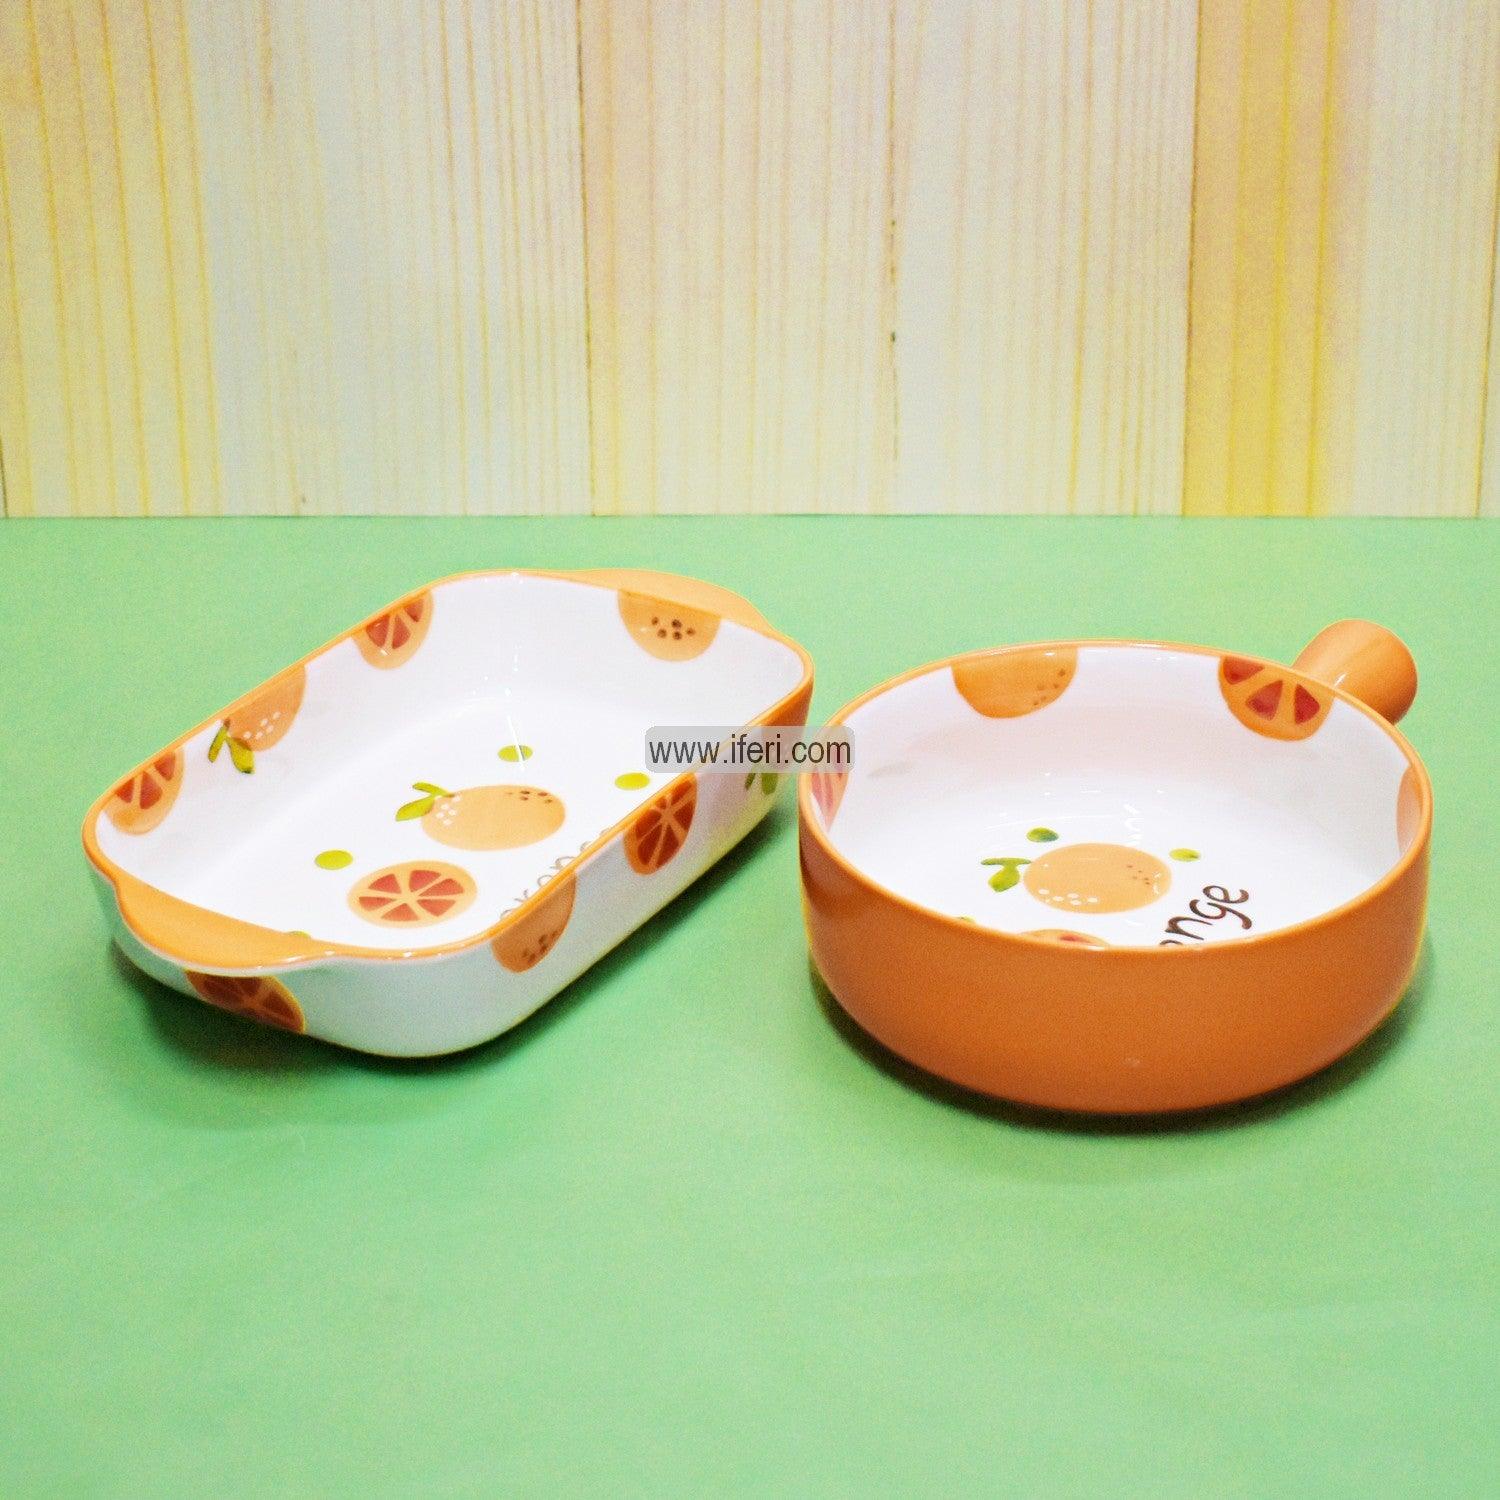 2 Pcs Ceramic Serving Dish SY0048 Price in Bangladesh - iferi.com